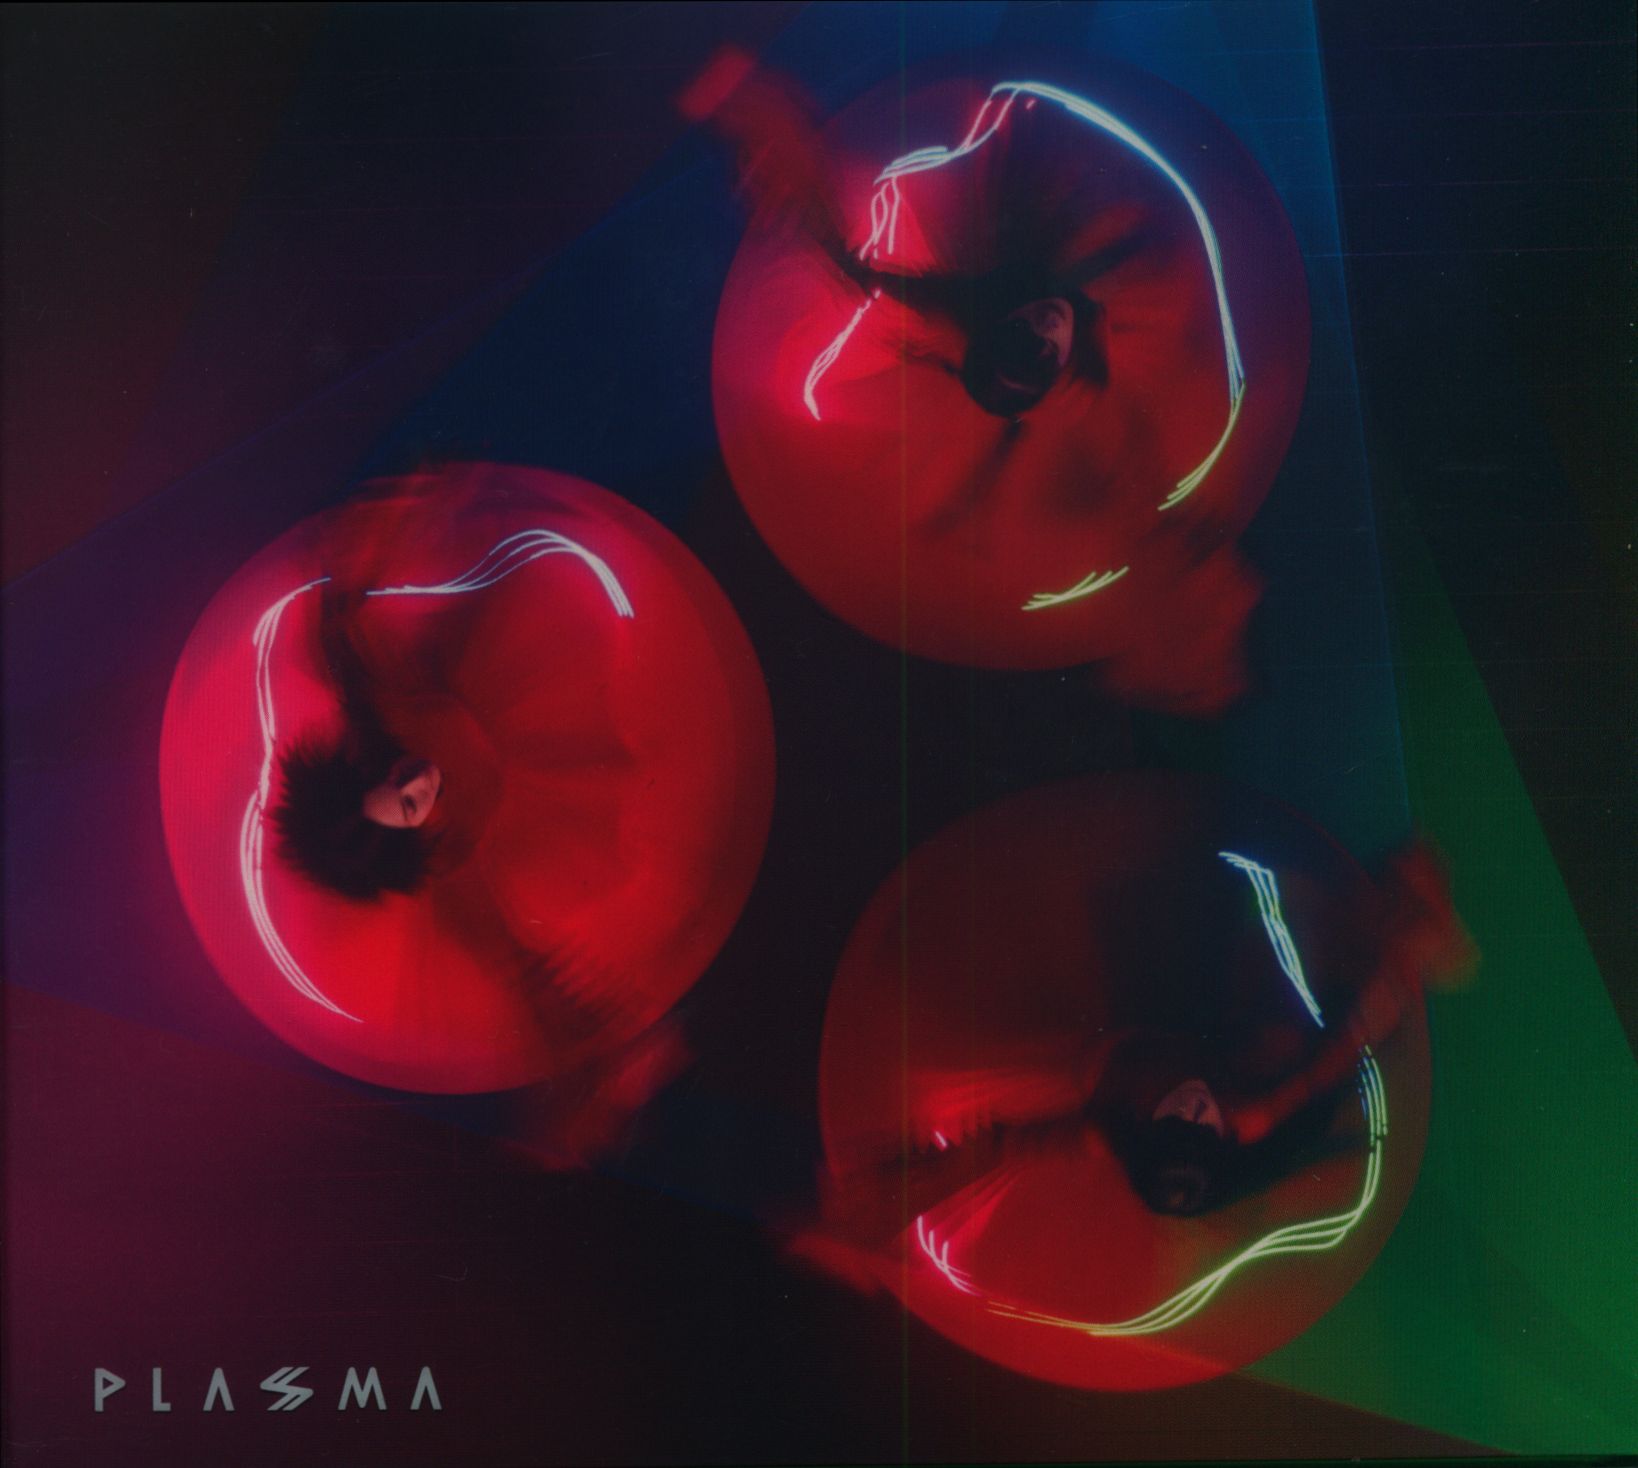 perfume PLASMA 完全生産限定盤A(2Blu-Ray フォトブック)